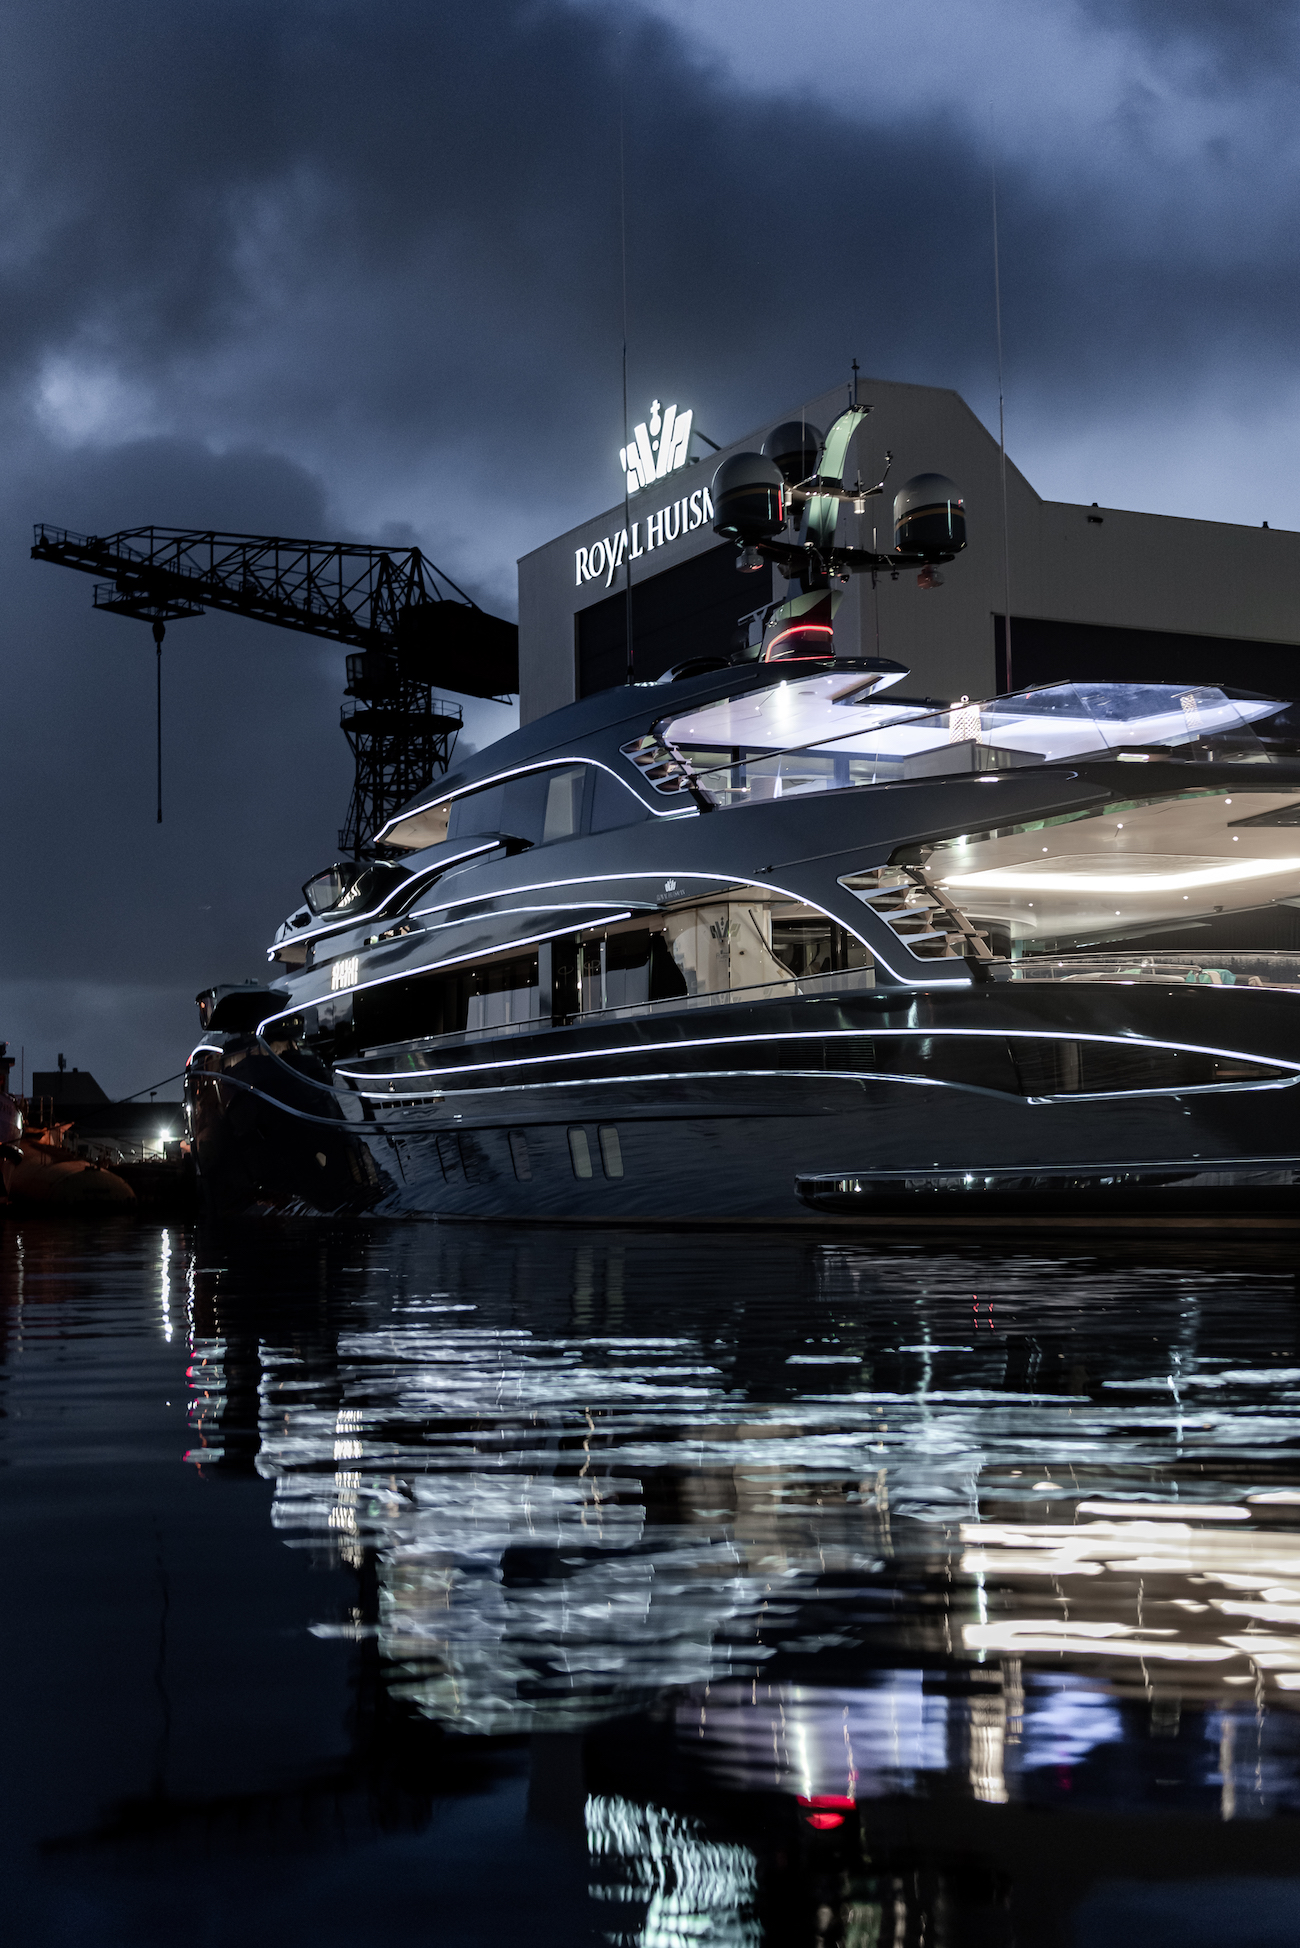 Yacht PHI lighting detail - photo by Tom van Oossanen